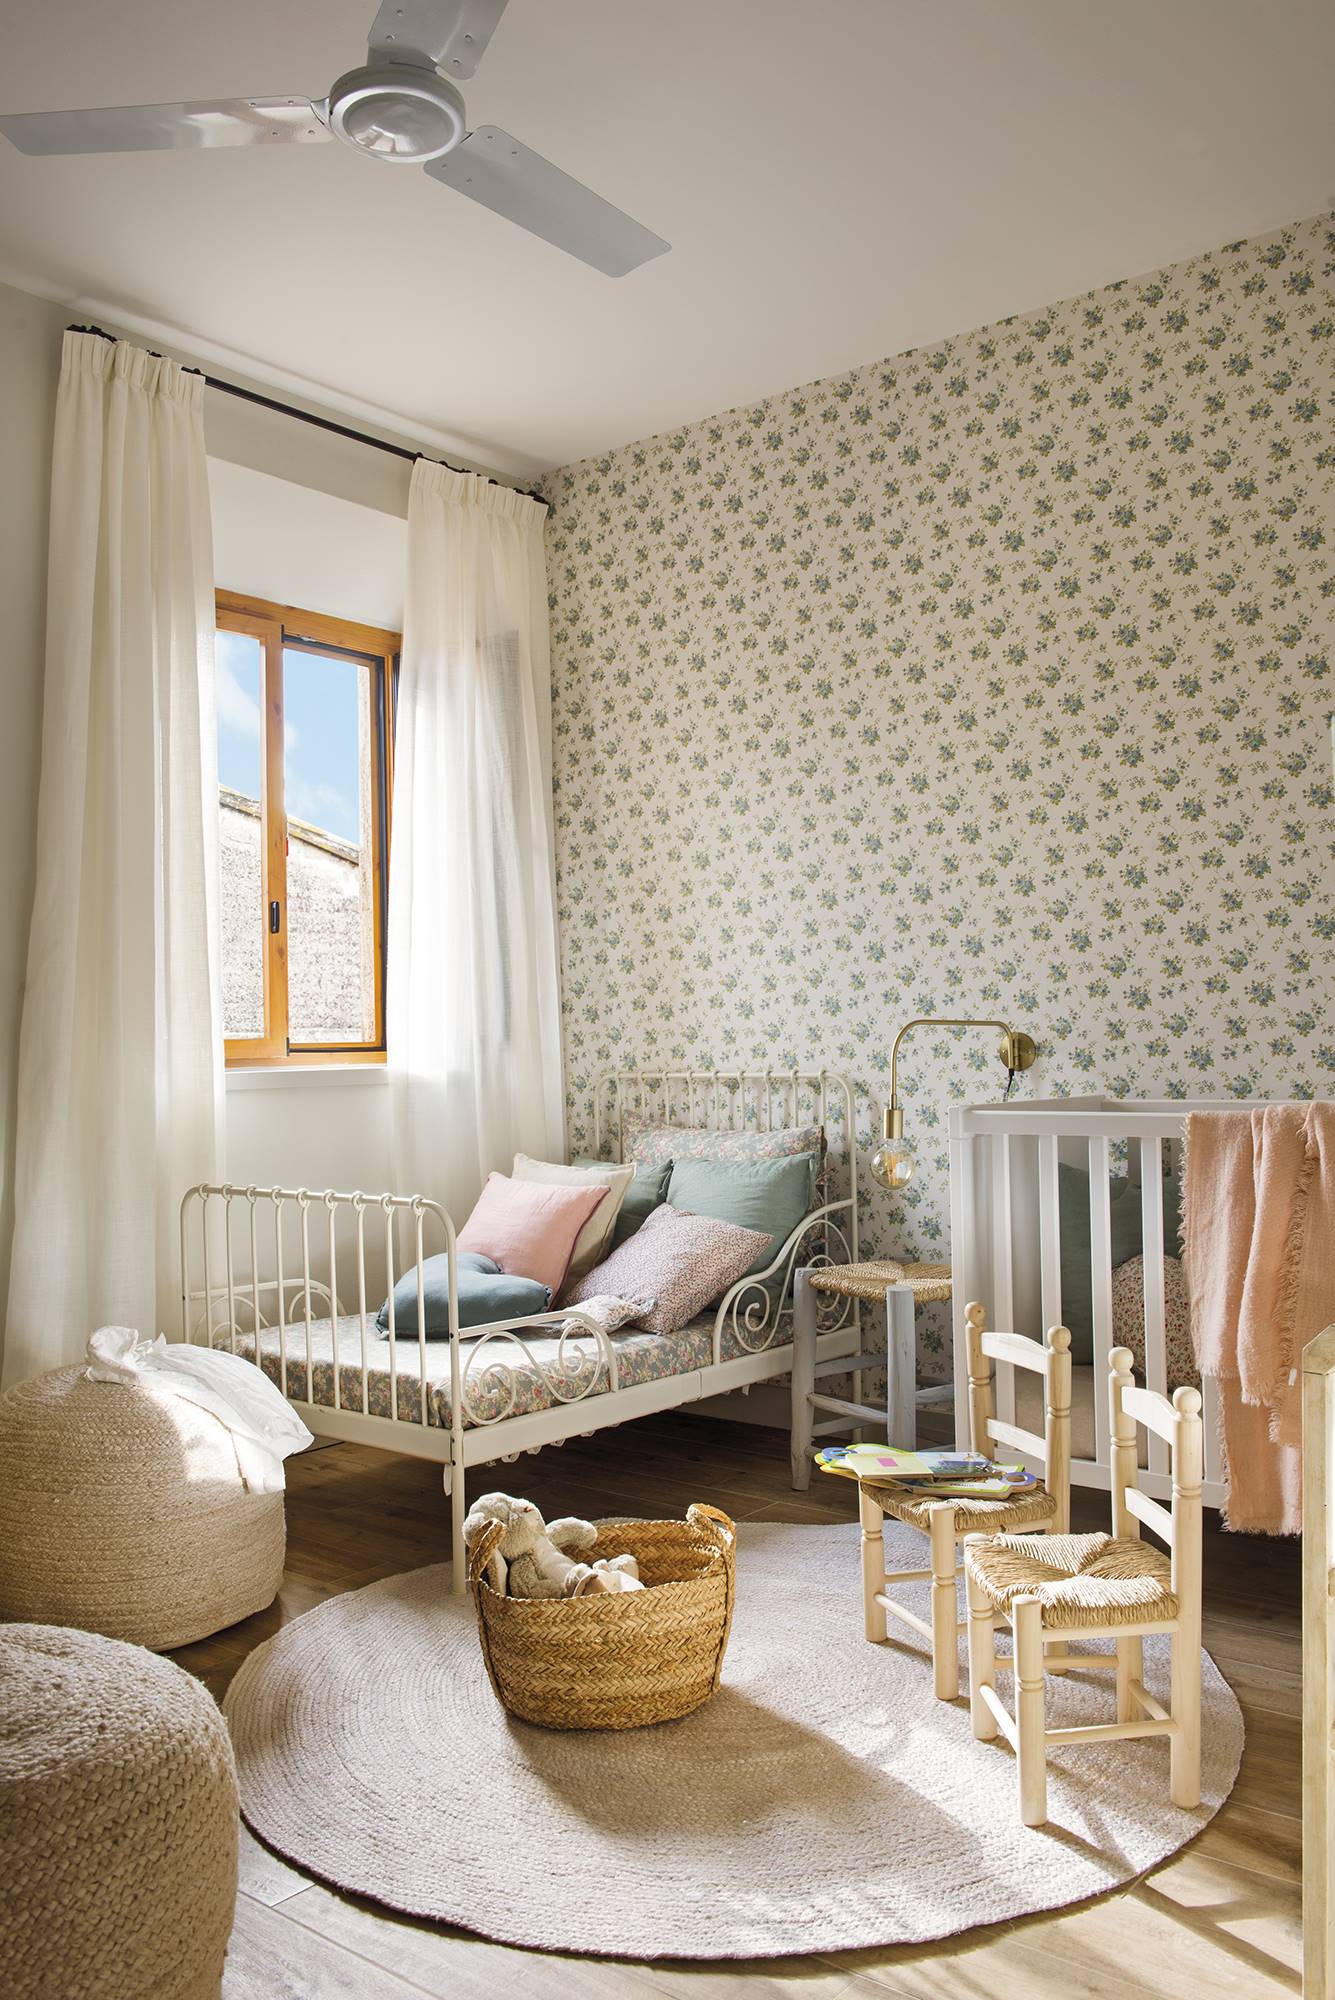 Habitación infantil de estilo campestre con papel pintado floral en tonos verde, cama de forja blanca y decoración de fibras naturales